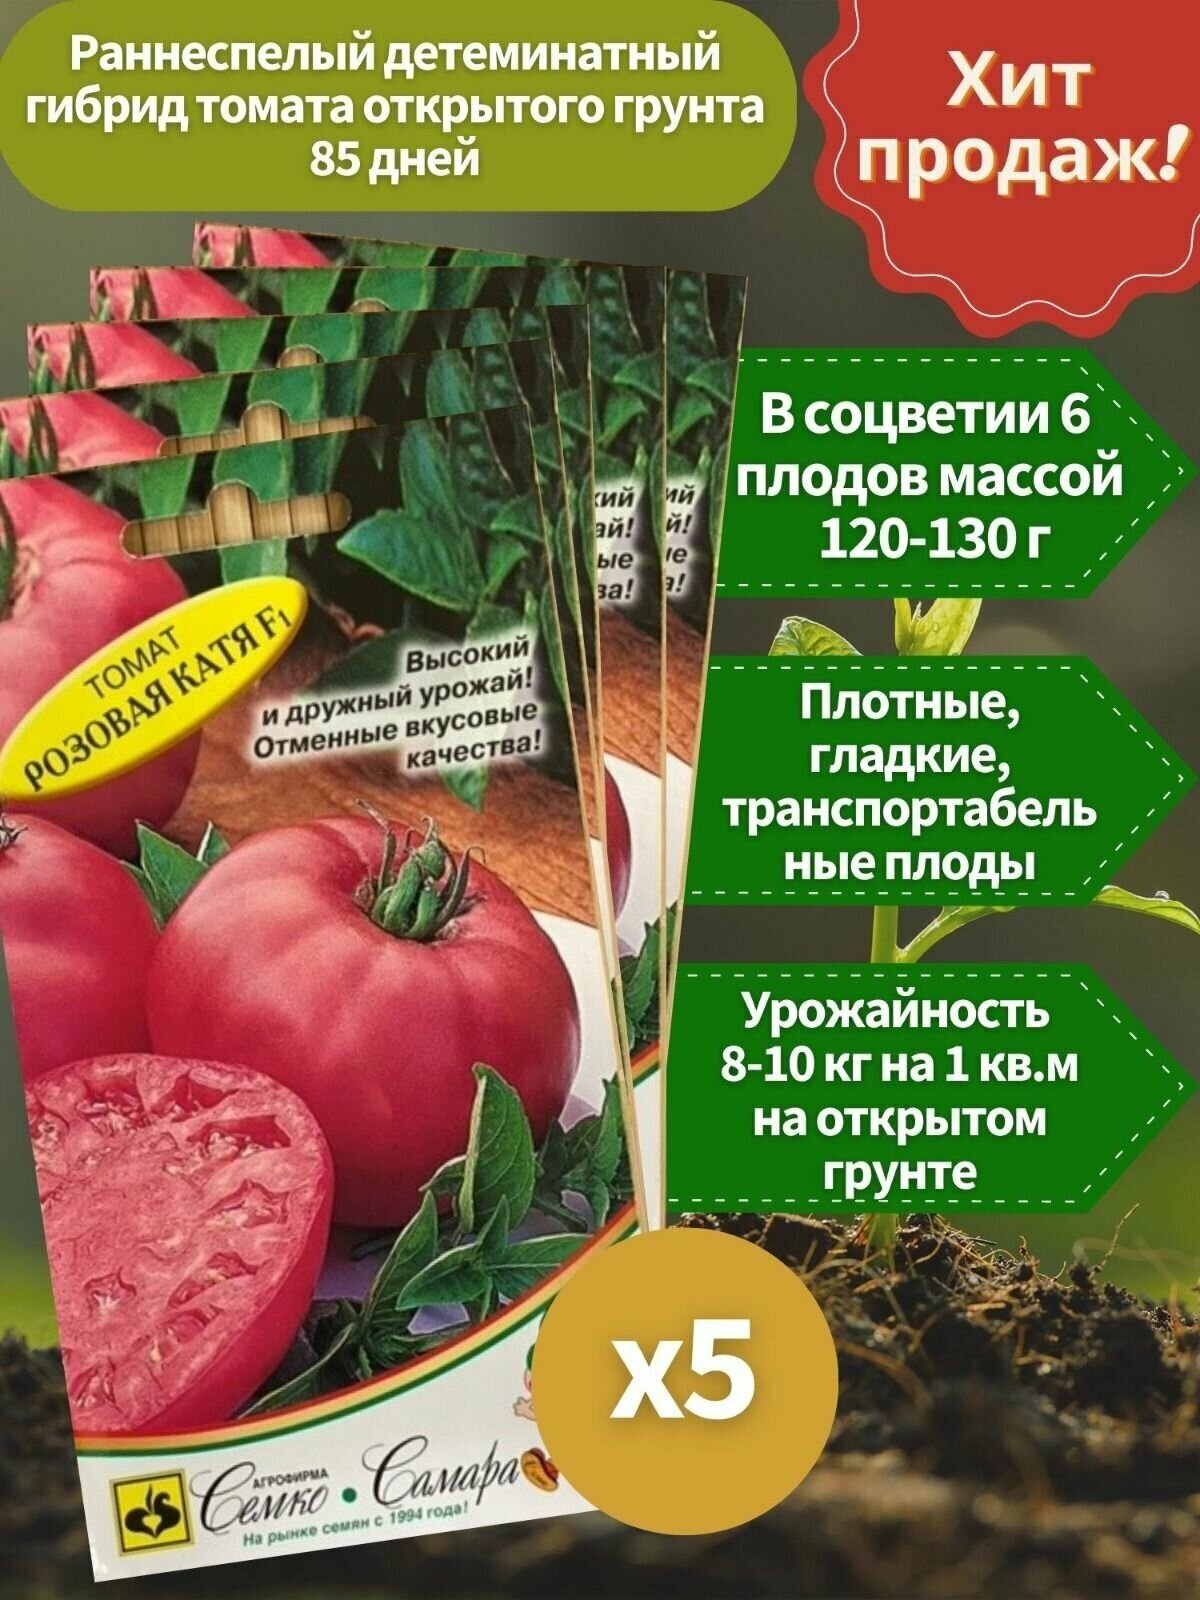 Семена томата "Катя Розовая" F1 5 упаковок по 10 шт, профессиональные семена